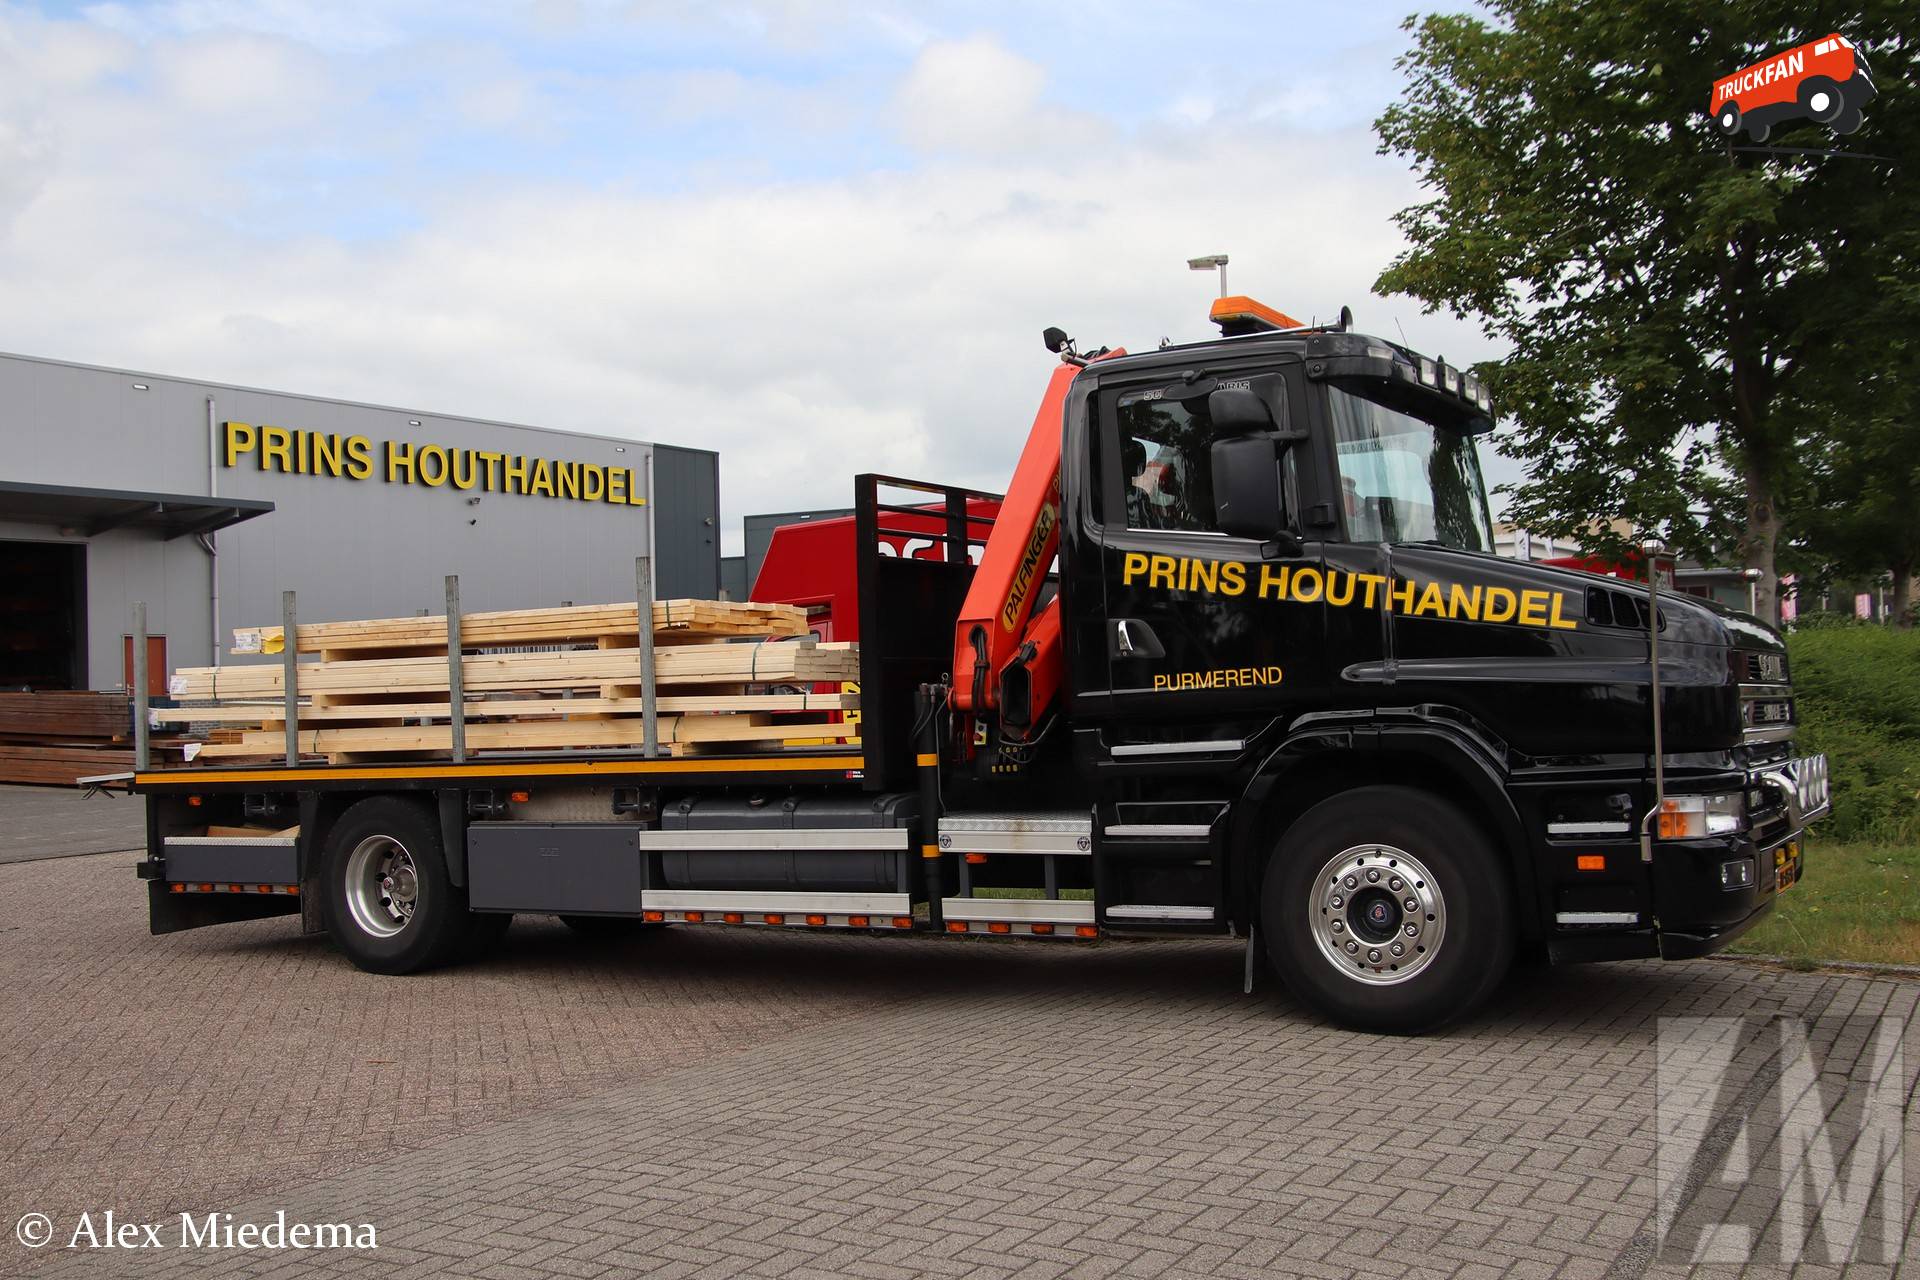 Hier zie je Prins Houthandel (Purmerend) × met een Scania T114, opgebouwd als open laadbak.